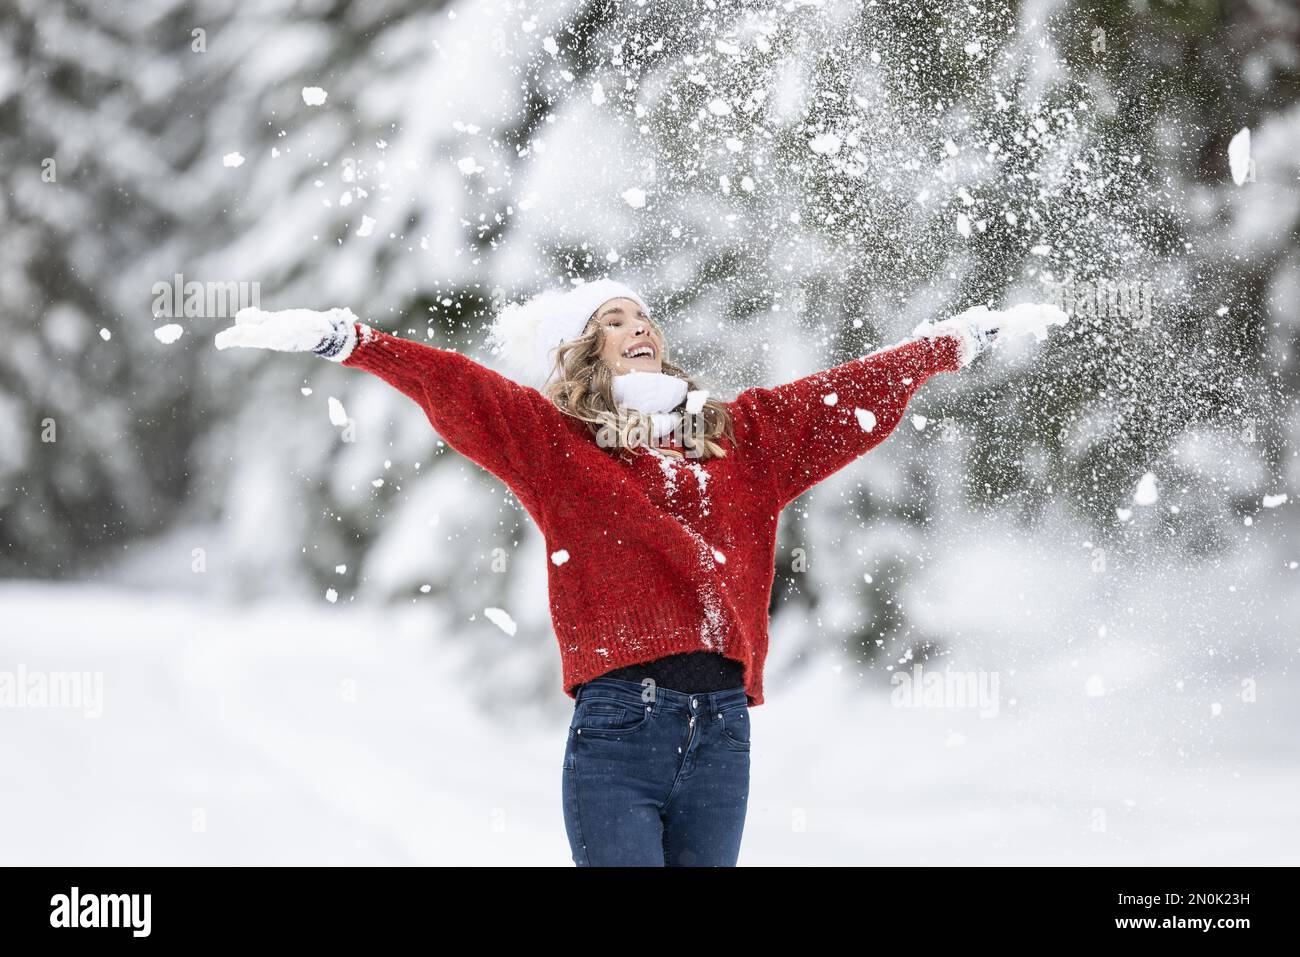 Mit weit geöffneten Armen genießt Frau in rotem Pullover, weißen Handschuhen, Schal und Hut an einem verschneiten Wintertag frische Luft. Stockfoto